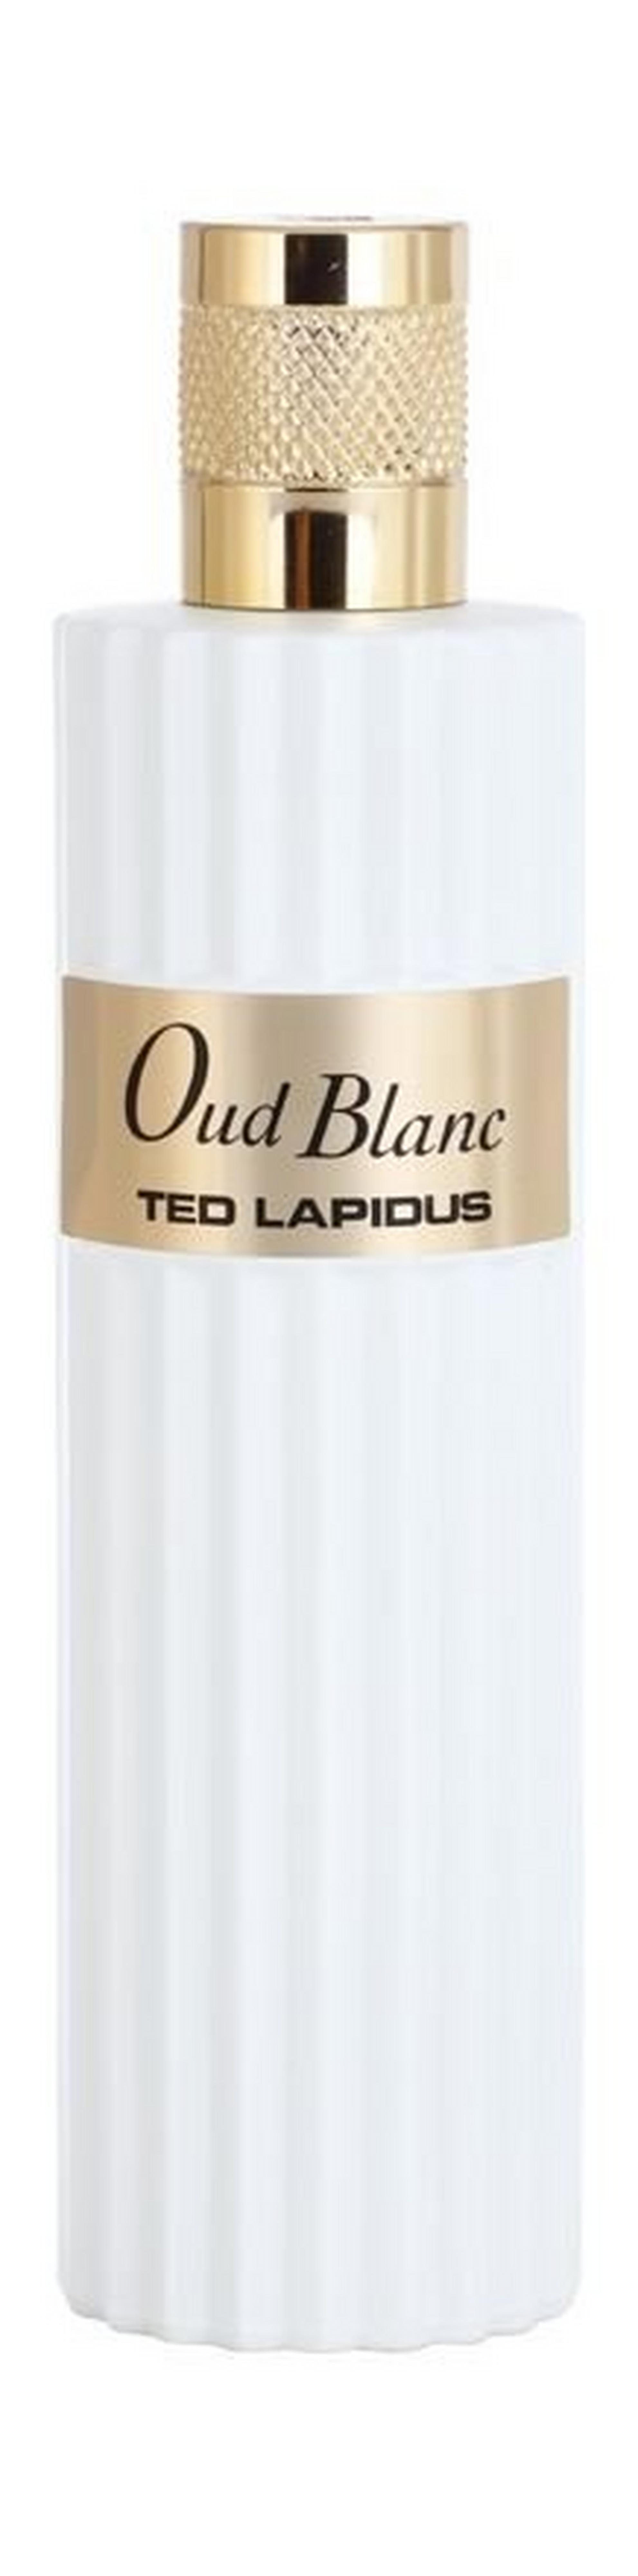 Oud Blanc by Ted Lapidus 100ml For Men and Women Eau de Parfum